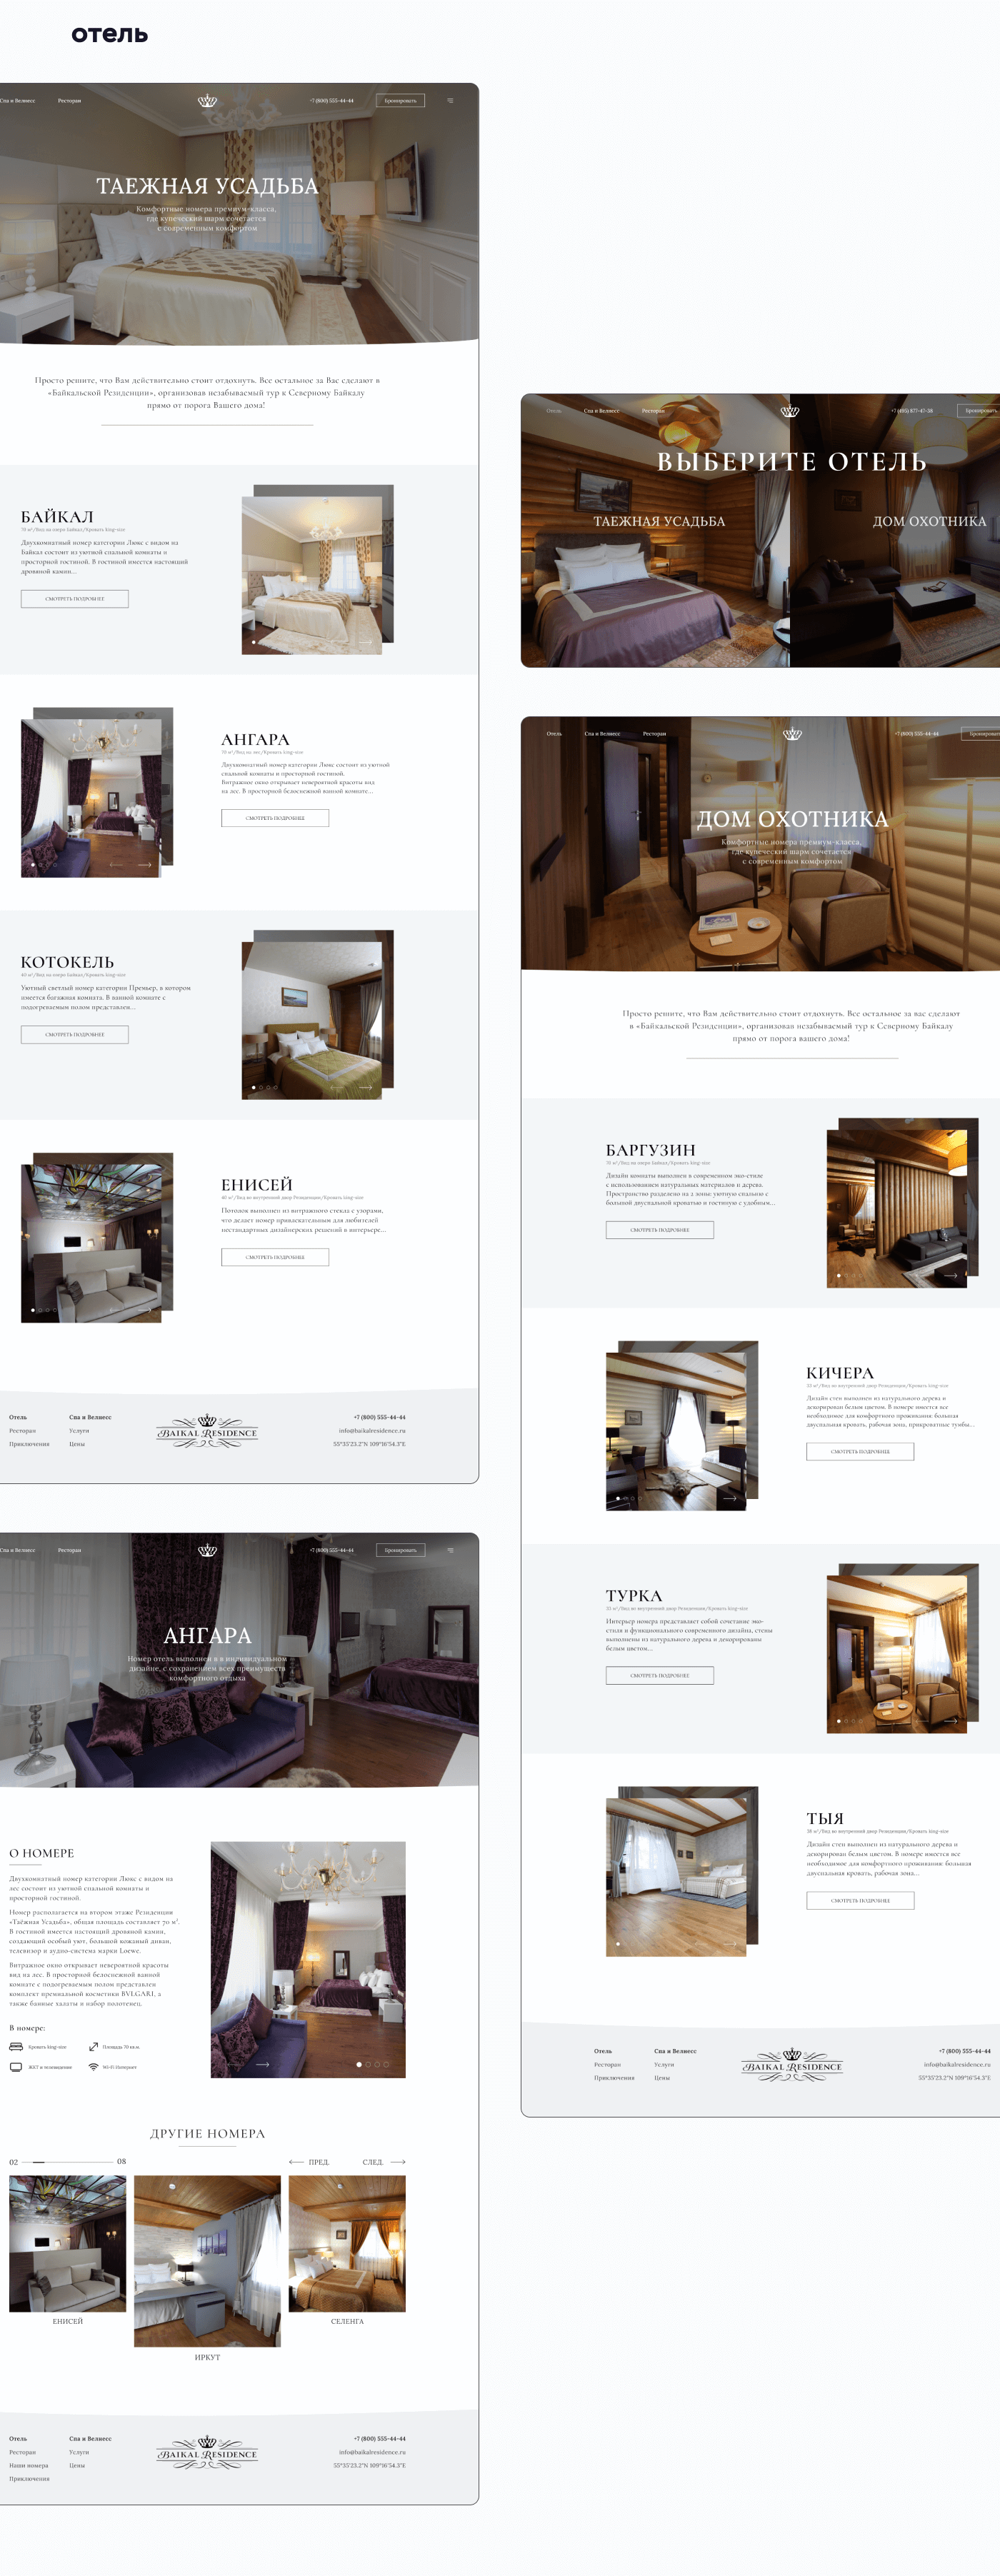 Байкальская резиденция | Редизайн сайта отеля — Изображение №5 — Интерфейсы, Анимация на Dprofile